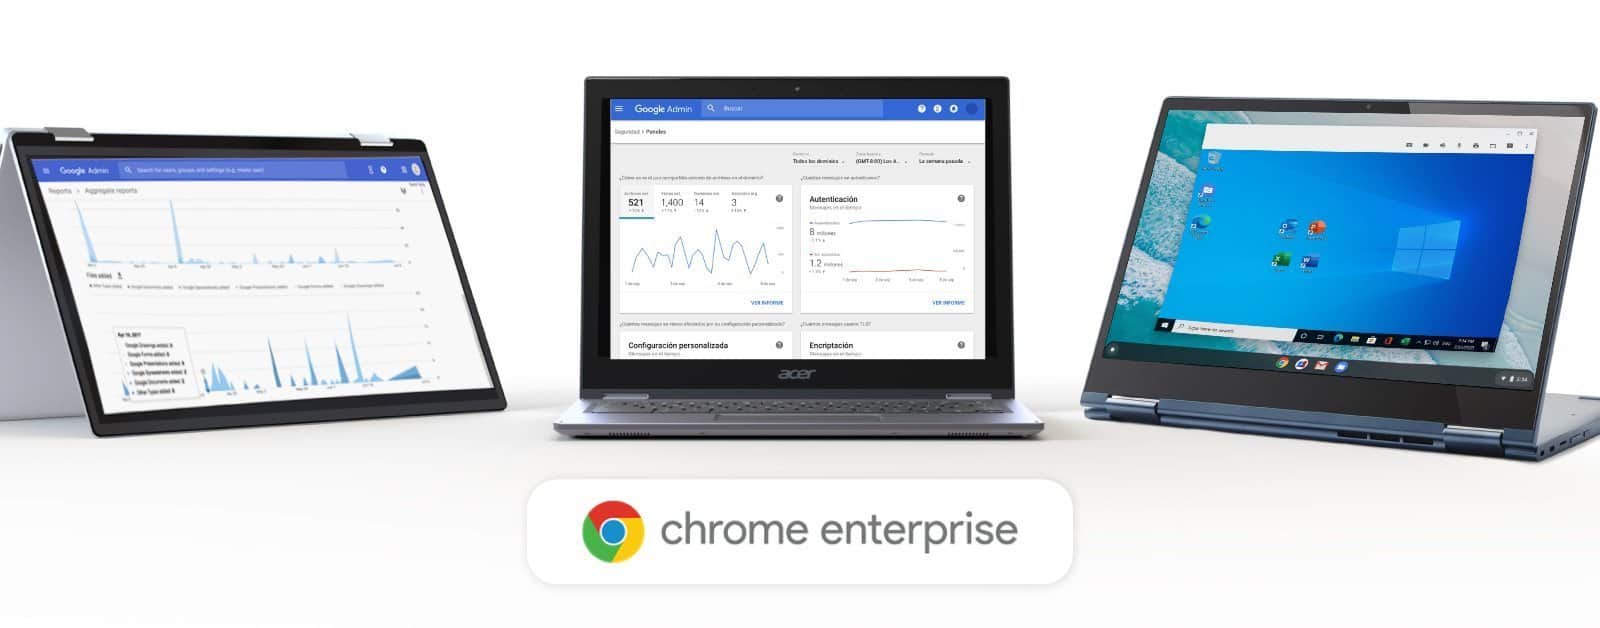 Ordenadores Chromebook con Chrome Enterprise